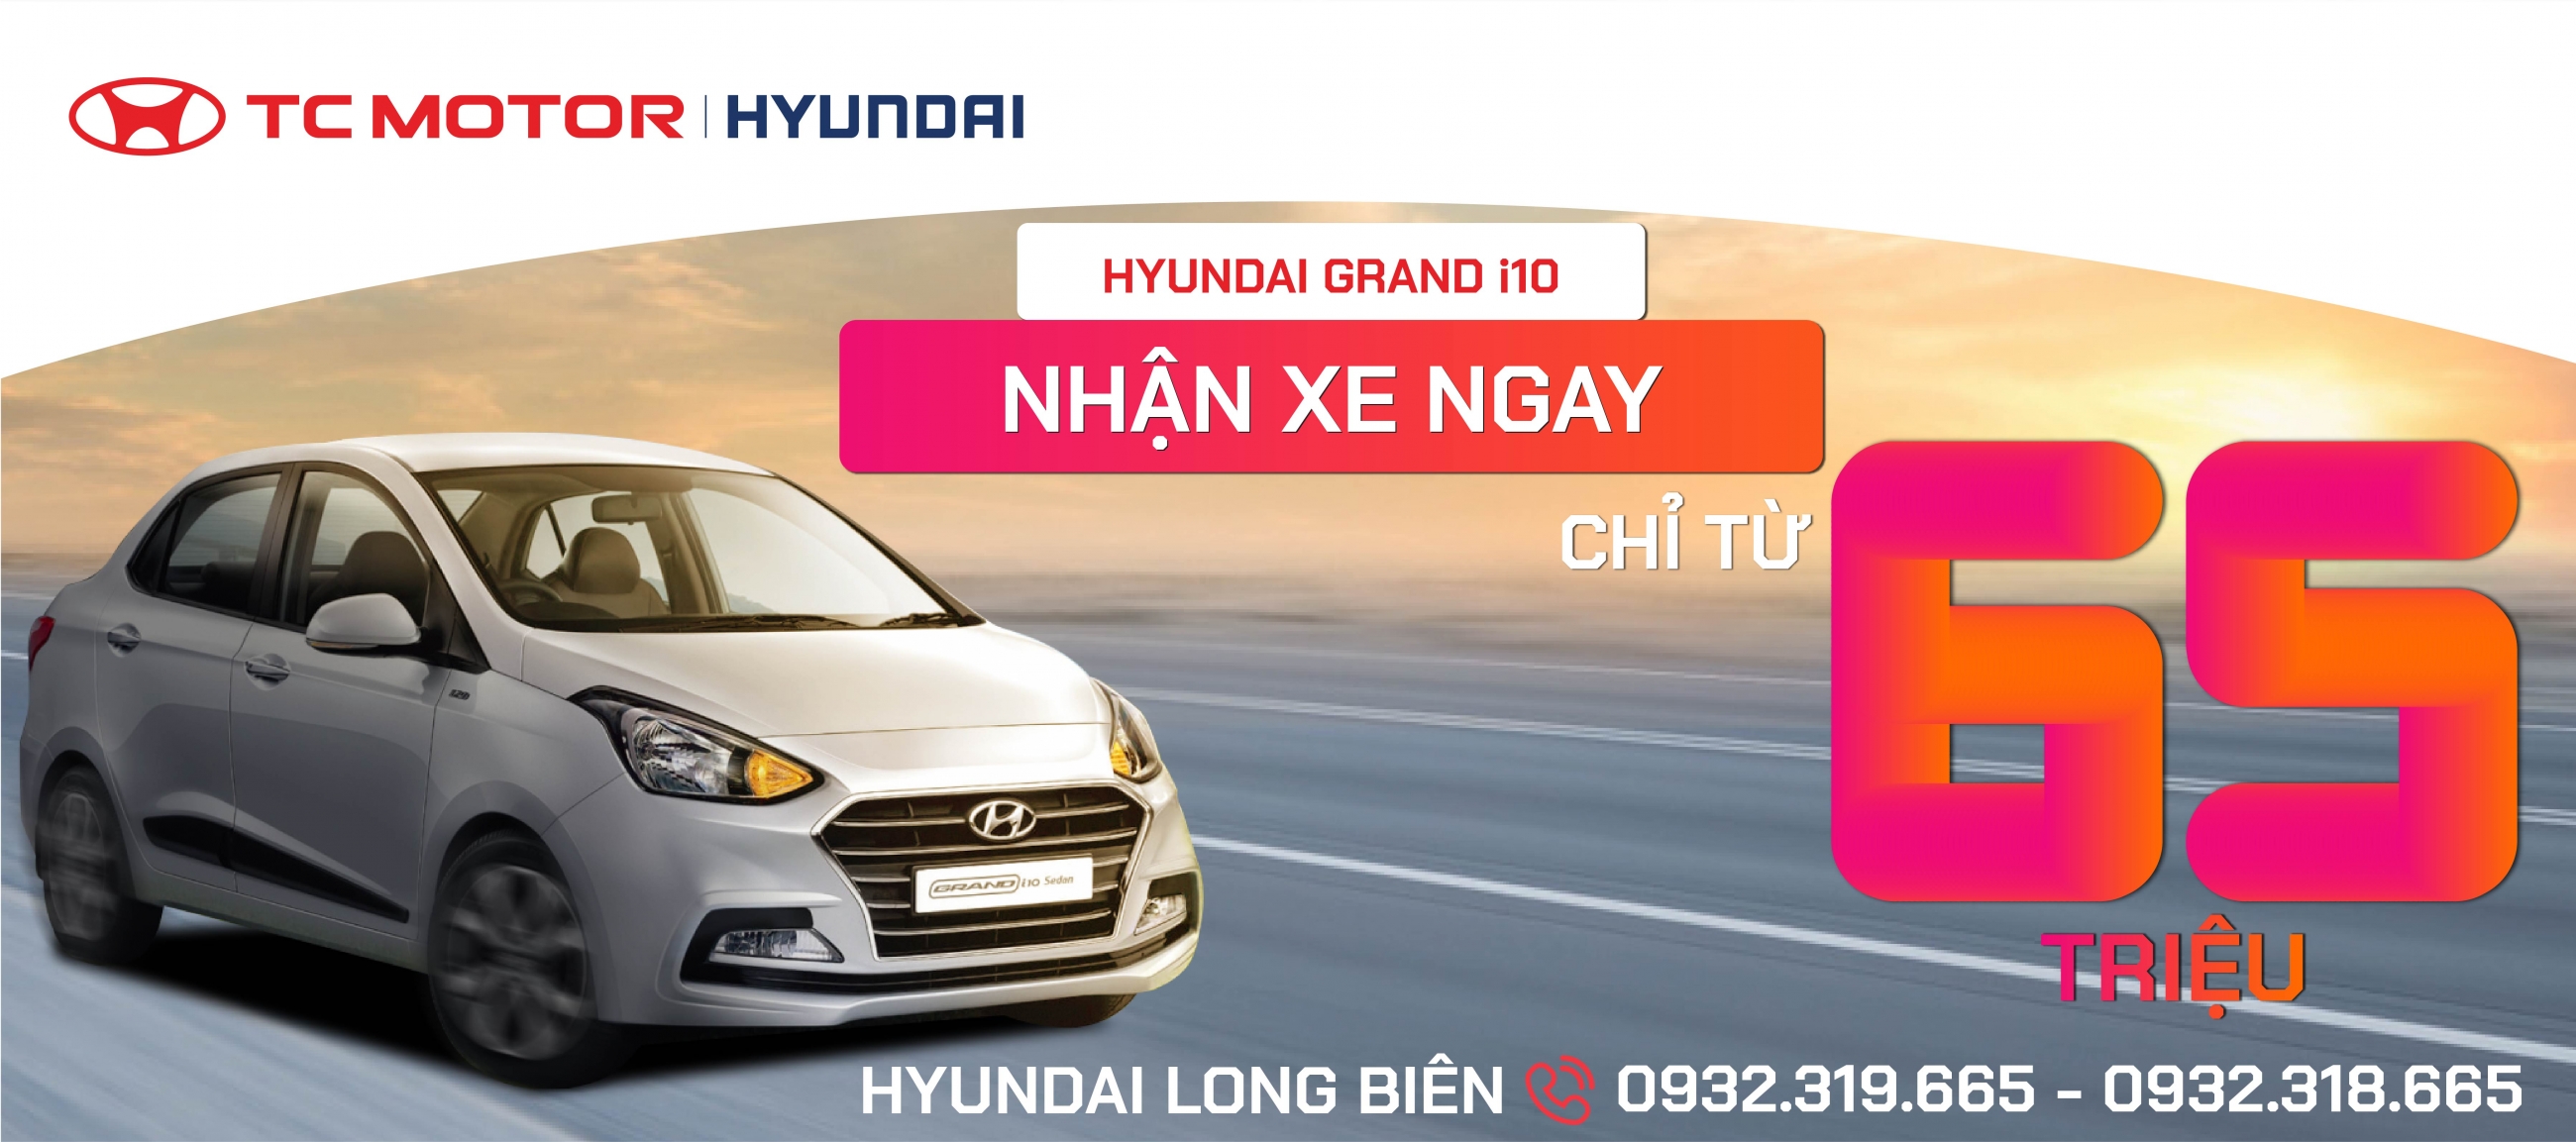 HYUNDAI GRAND I10 NHẬN XE NGAY - CHỈ TỪ 65 TRIỆU | Hyundai Long Biên by TC MOTOR